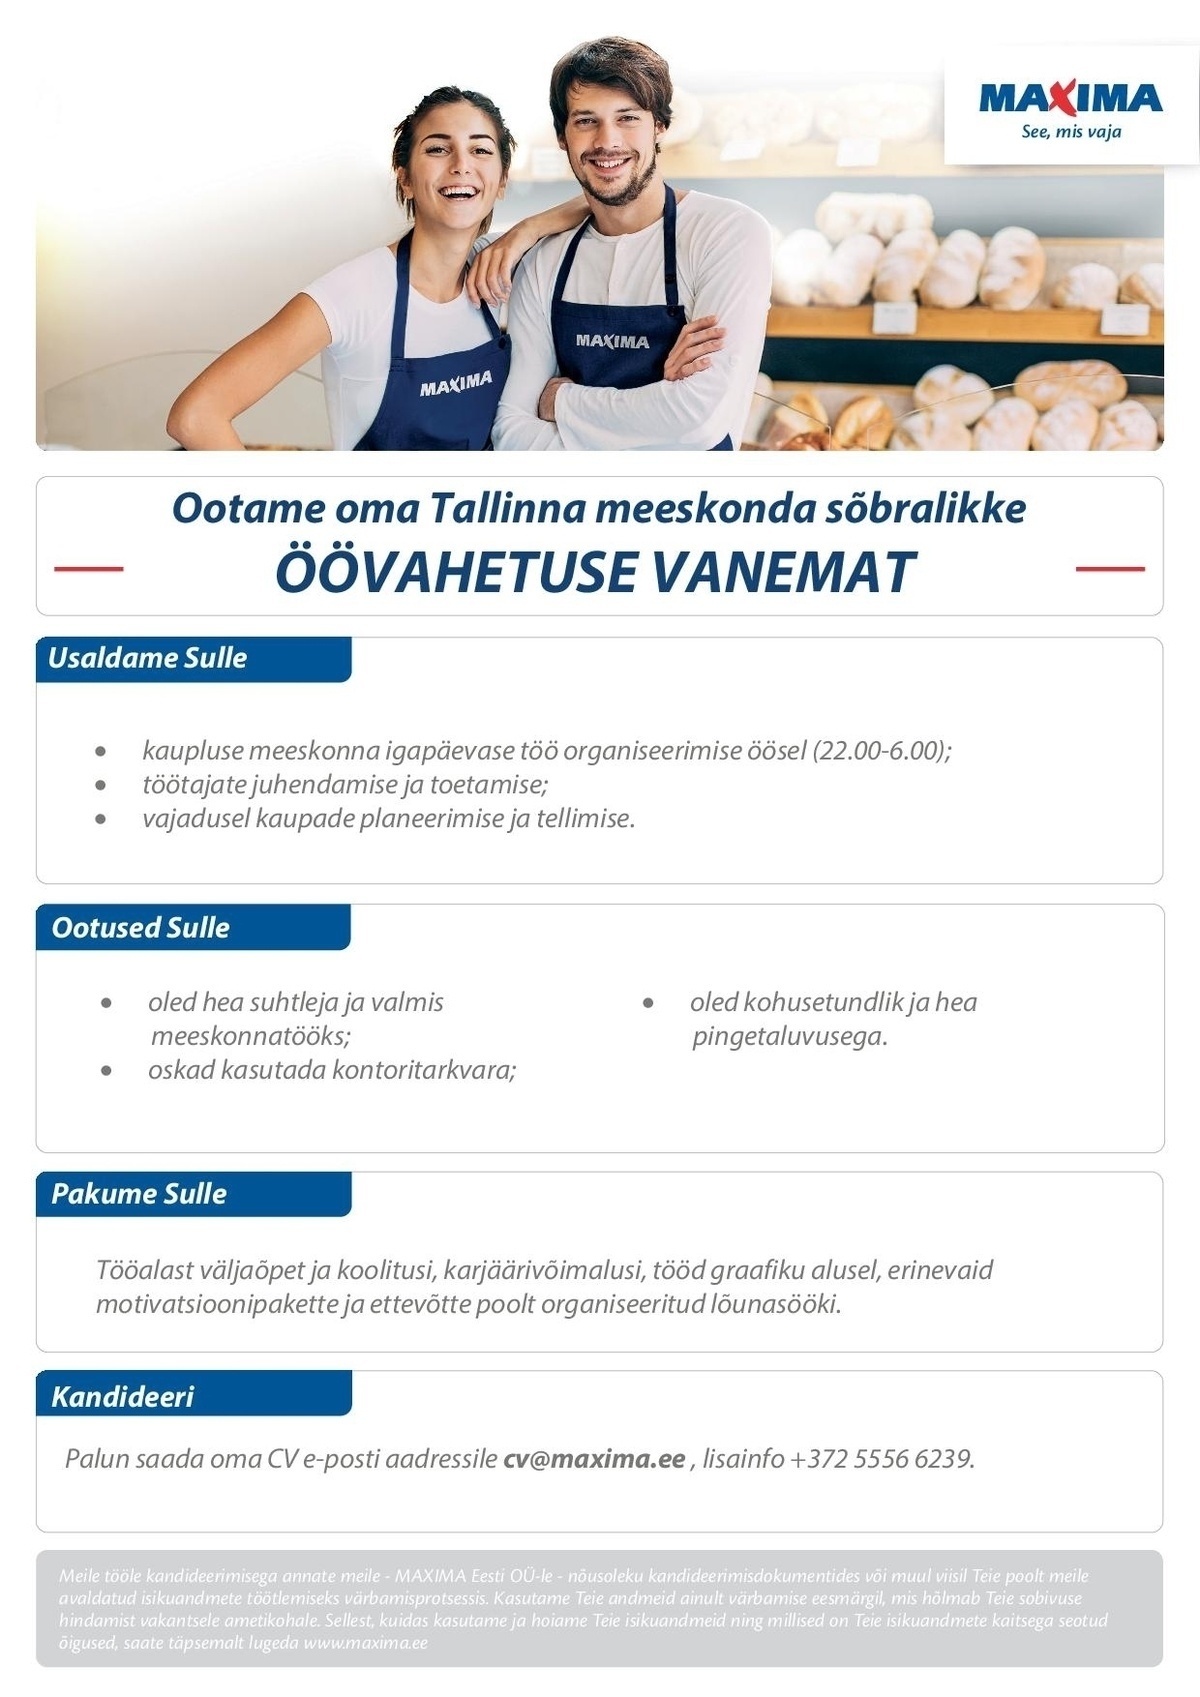 Maxima Eesti OÜ Öövahetuse vanem Tallinna Maximasse